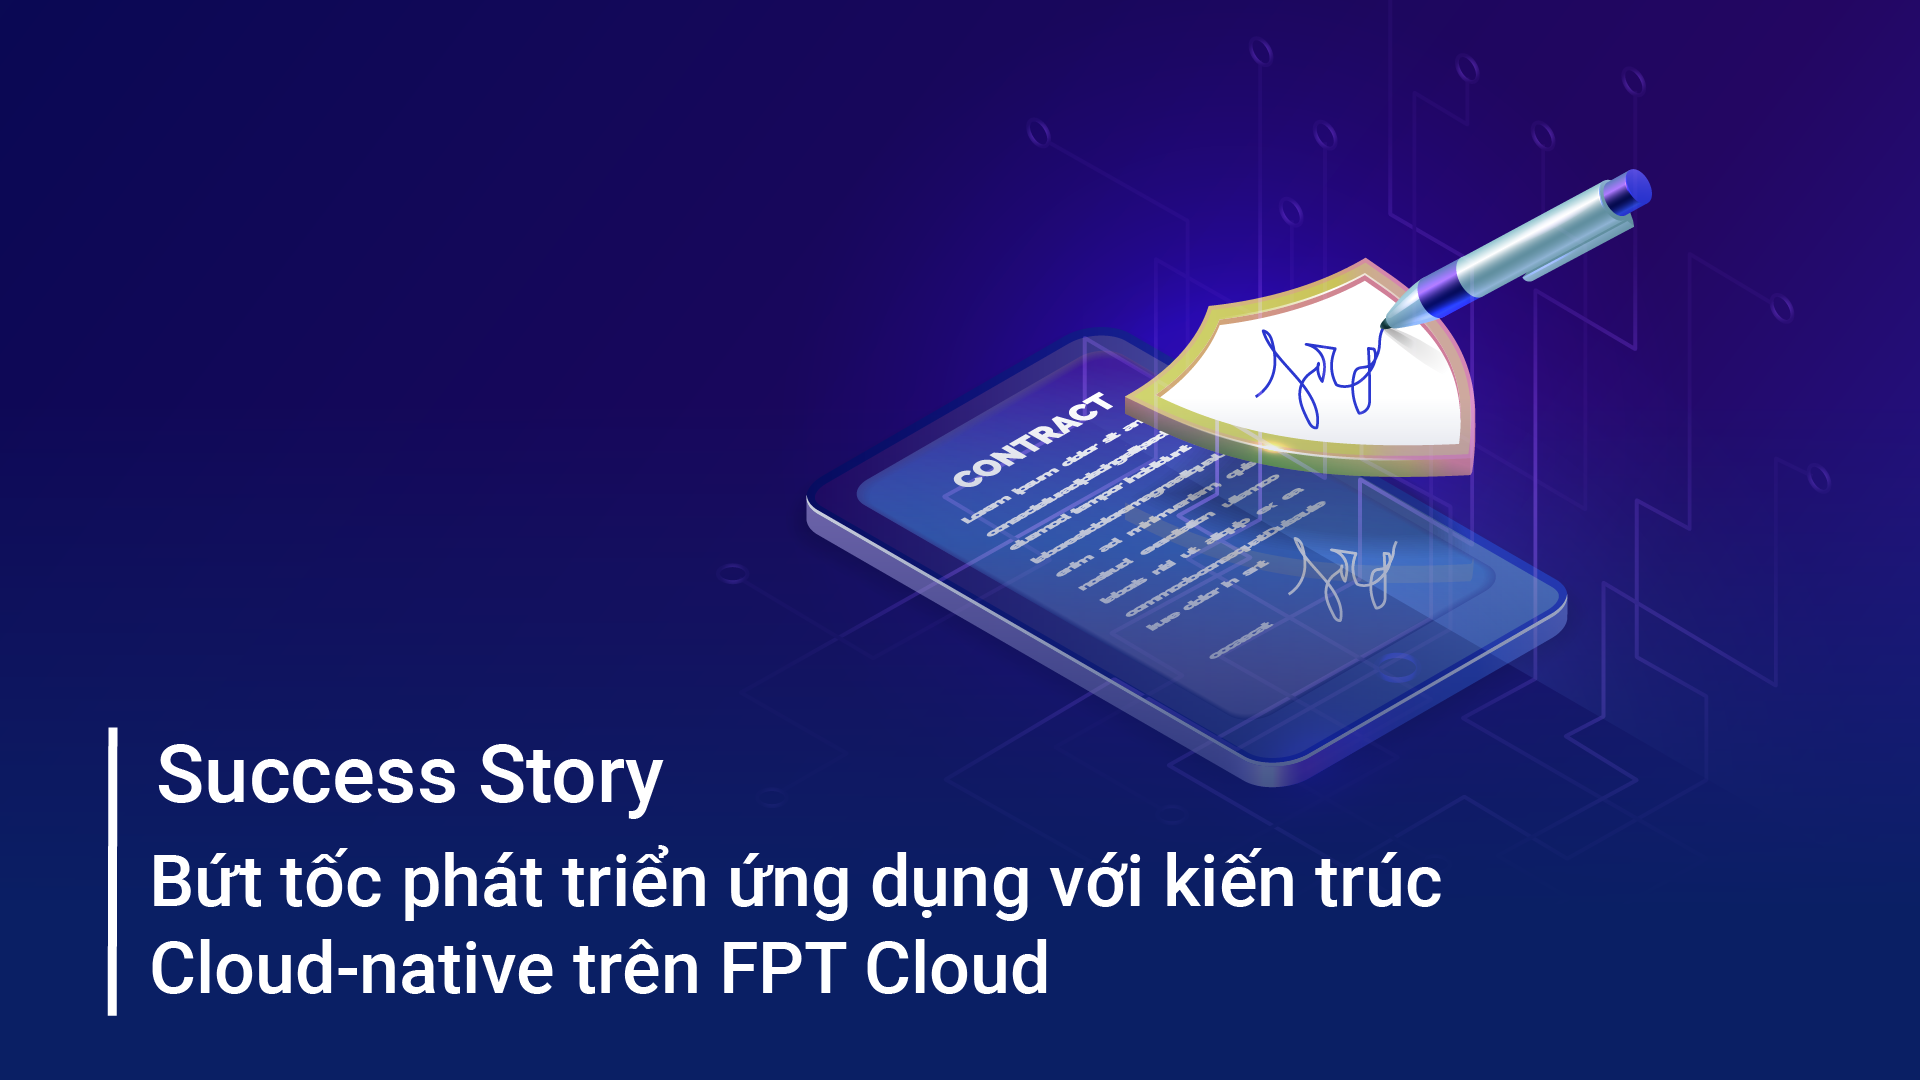 Bứt tốc phát triển ứng dụng với kiến trúc Cloud native trên FPT Cloud